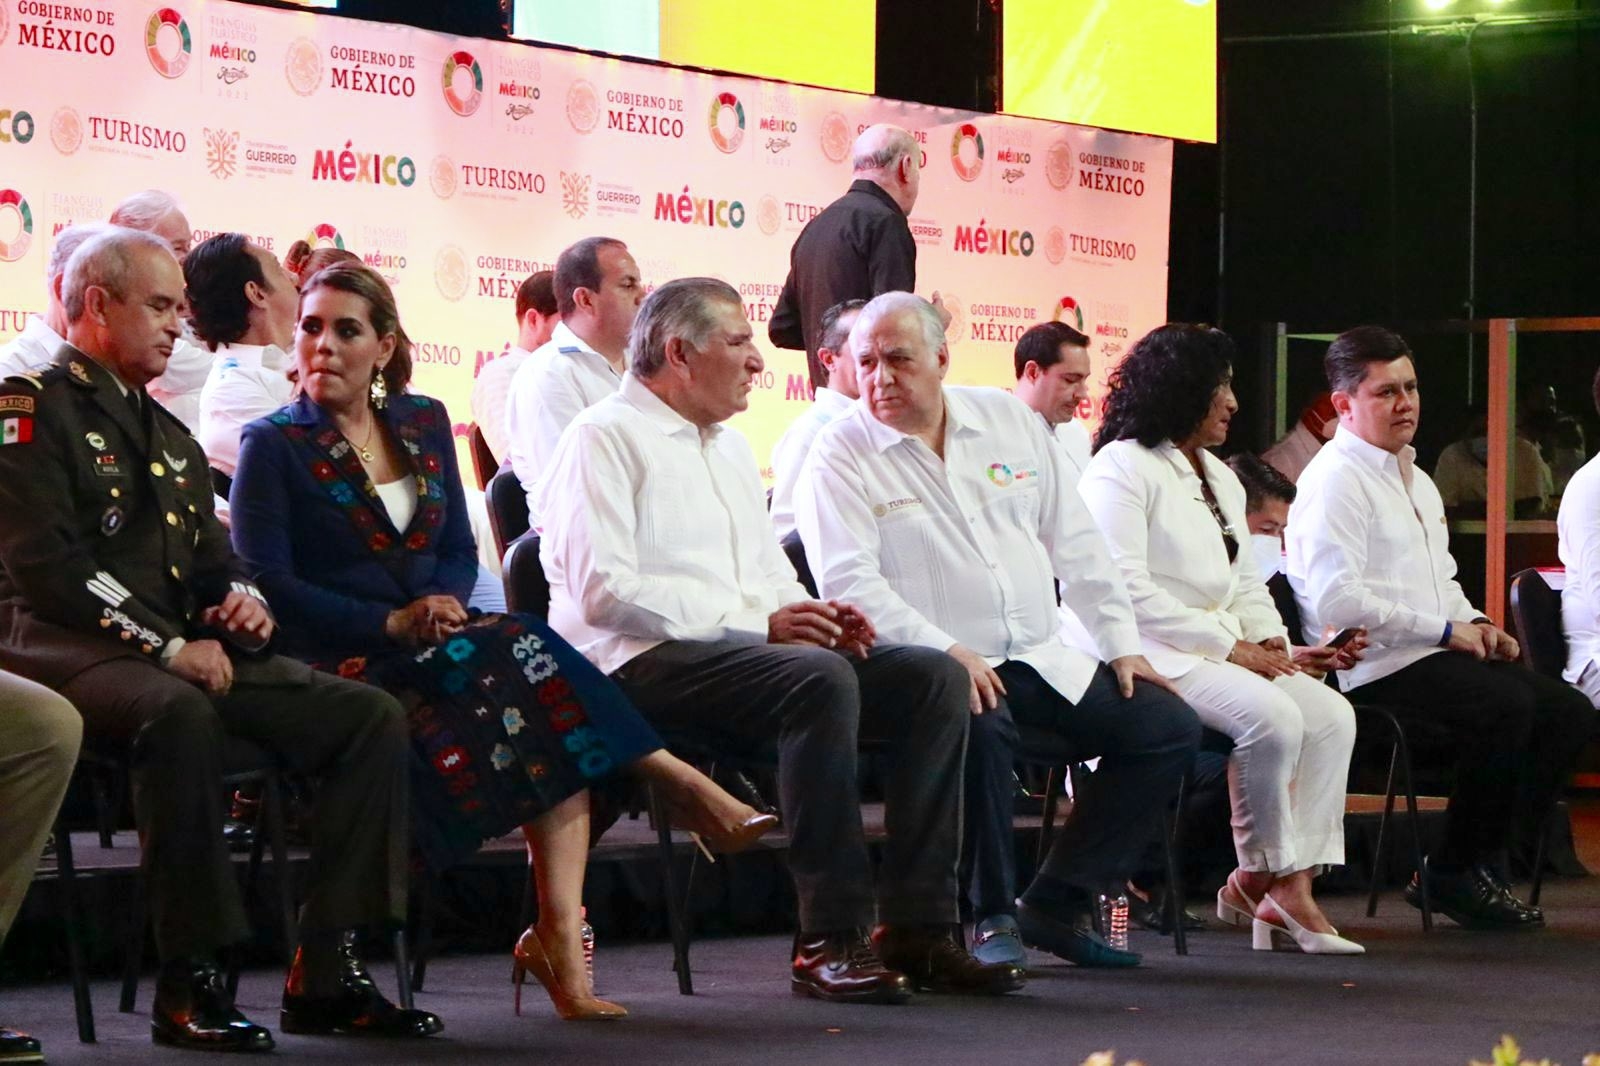 El evento estuvo encabezado por el secretario de Gobernación Adán Augusto en representación del presidente Andrés Manuel López Obrador